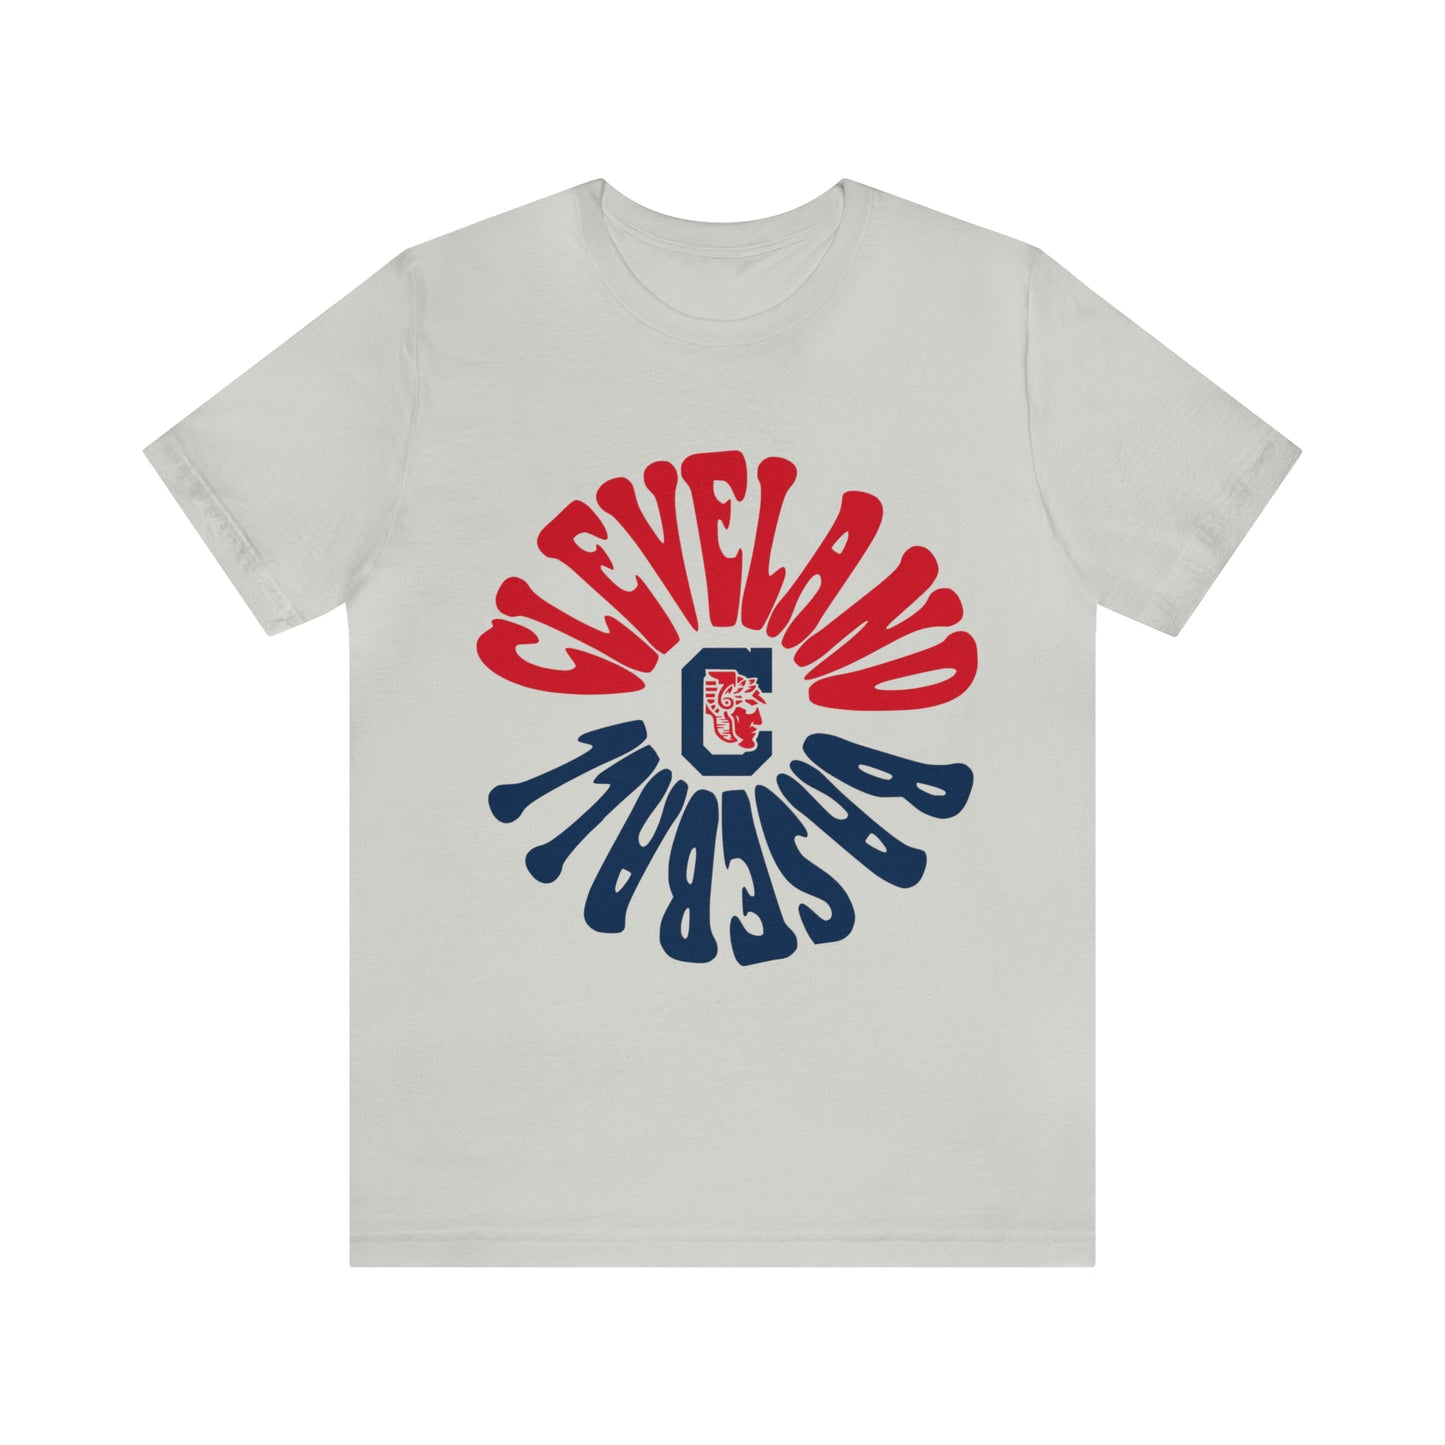 Hippy Cleveland Baseball Tee - Vintage Short Sleeve Unisex T-Shirt